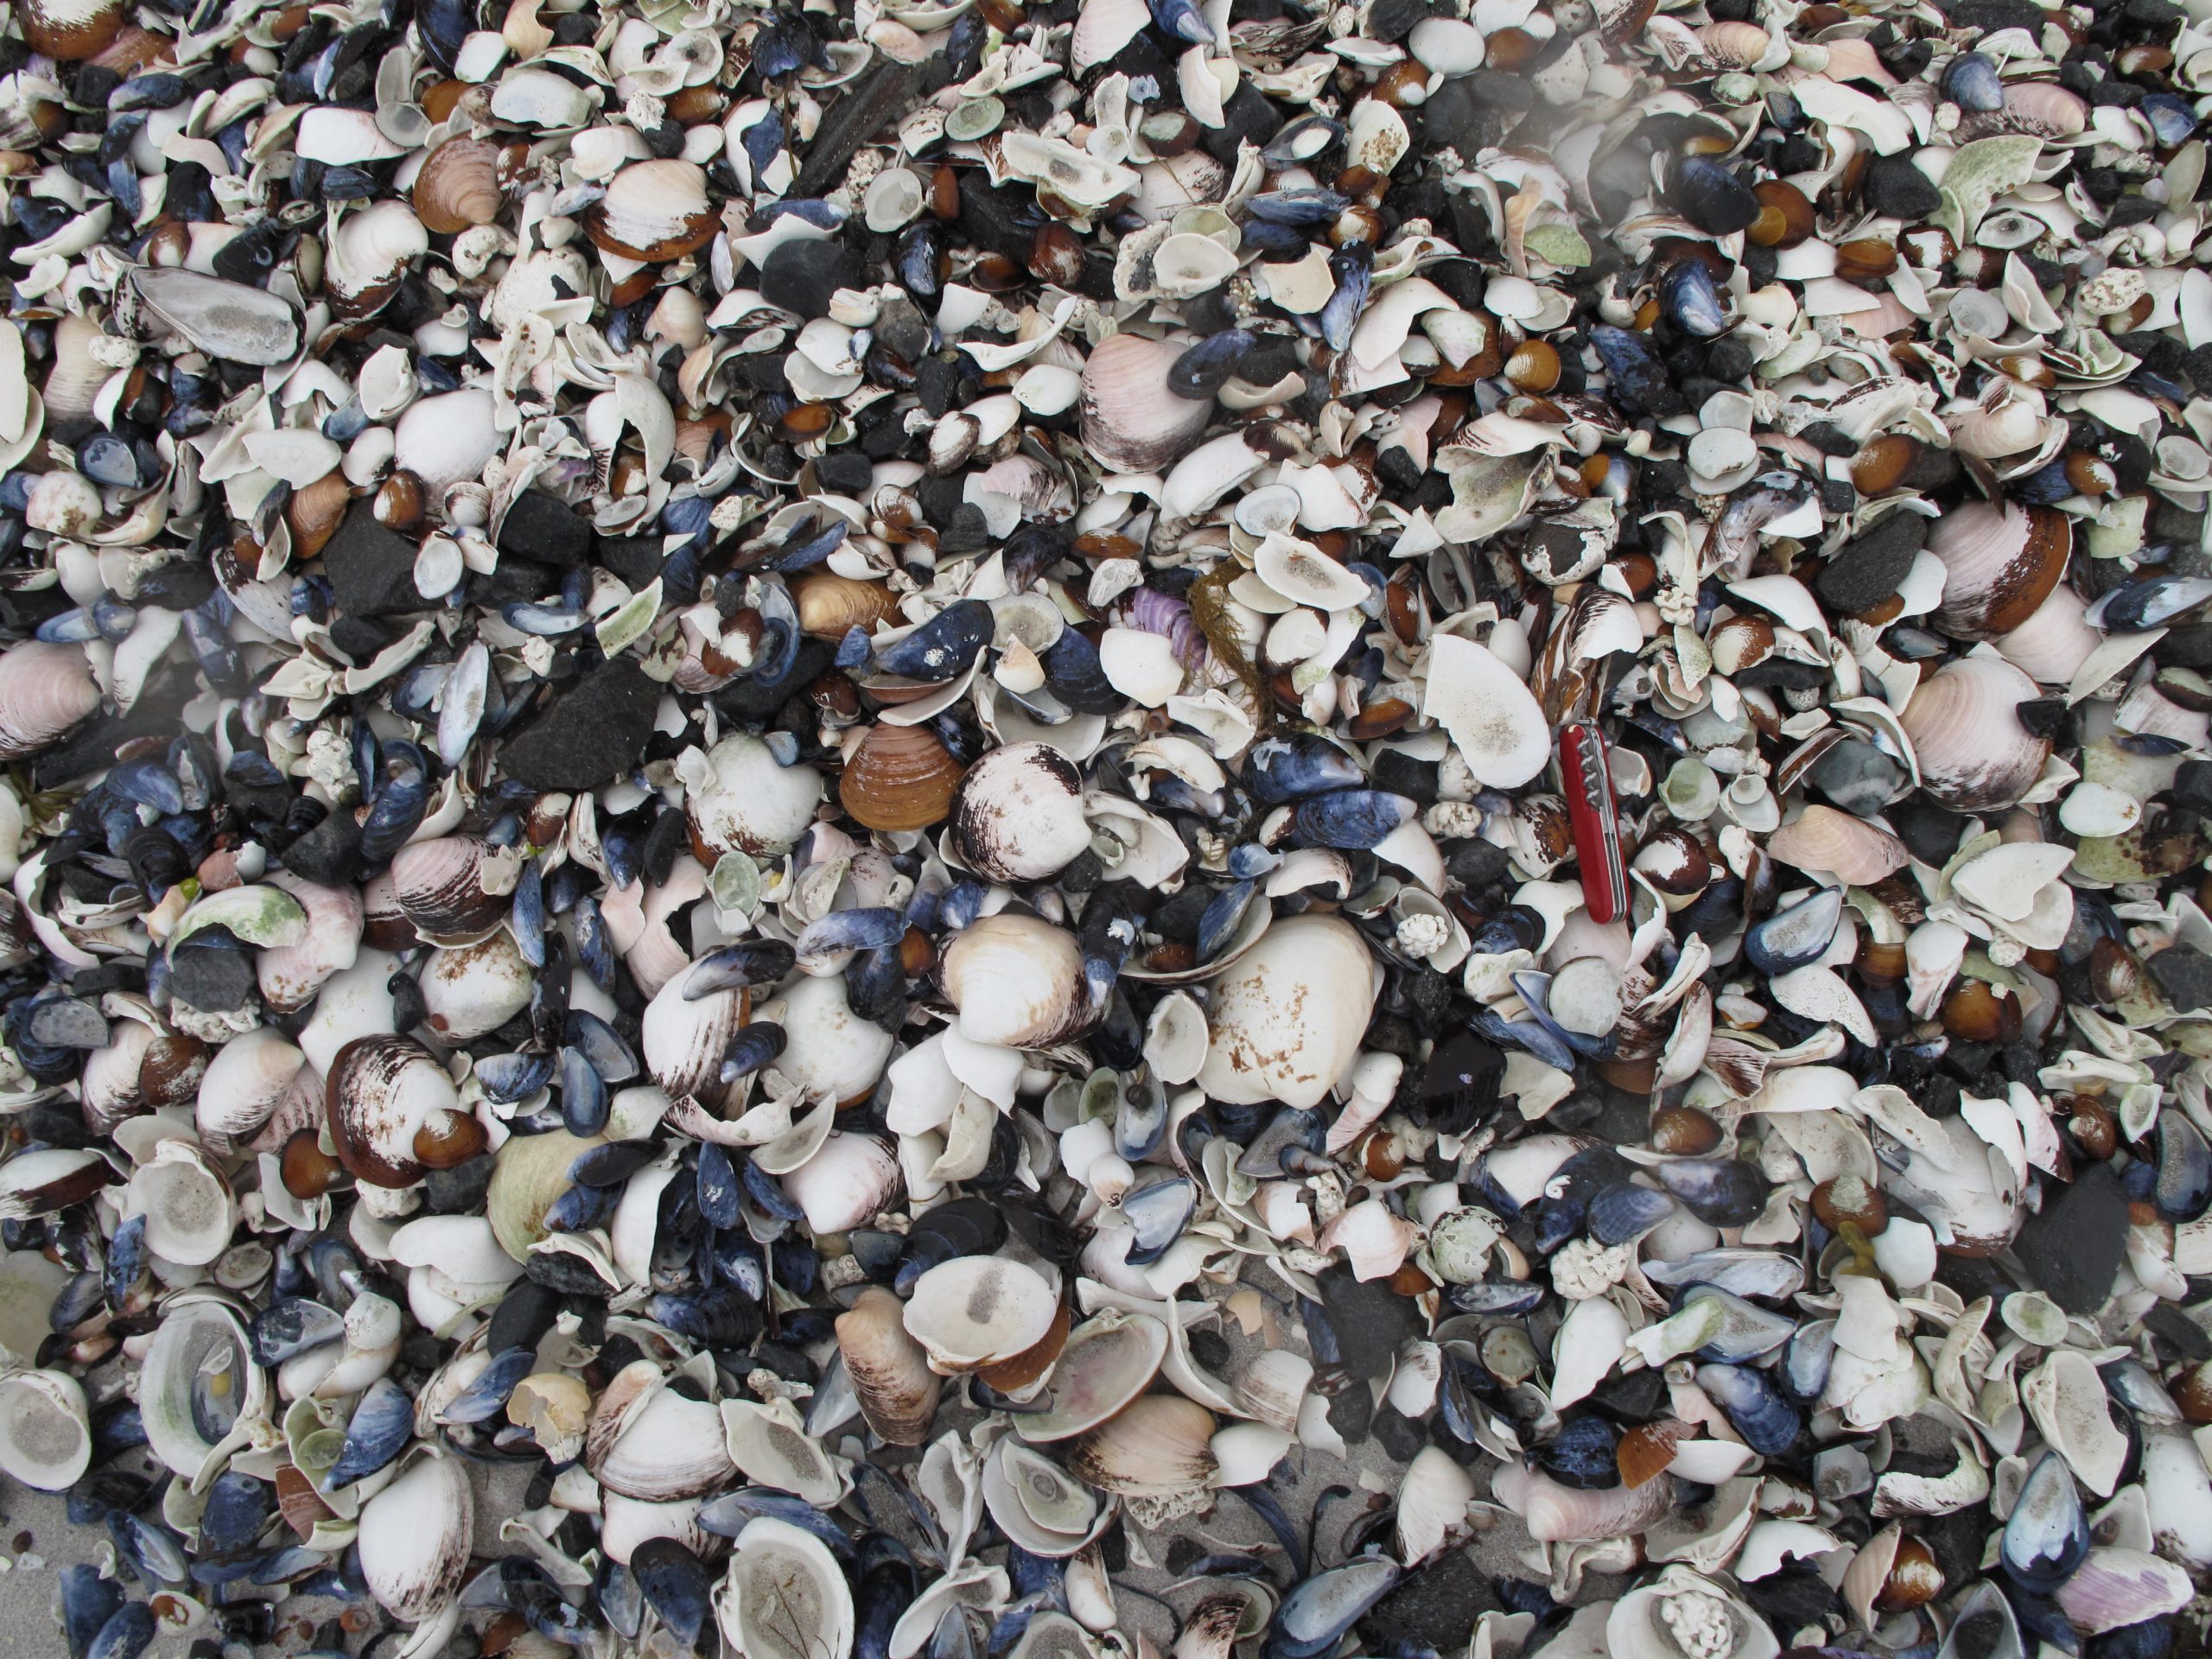 Pile ‘o shells on the beach